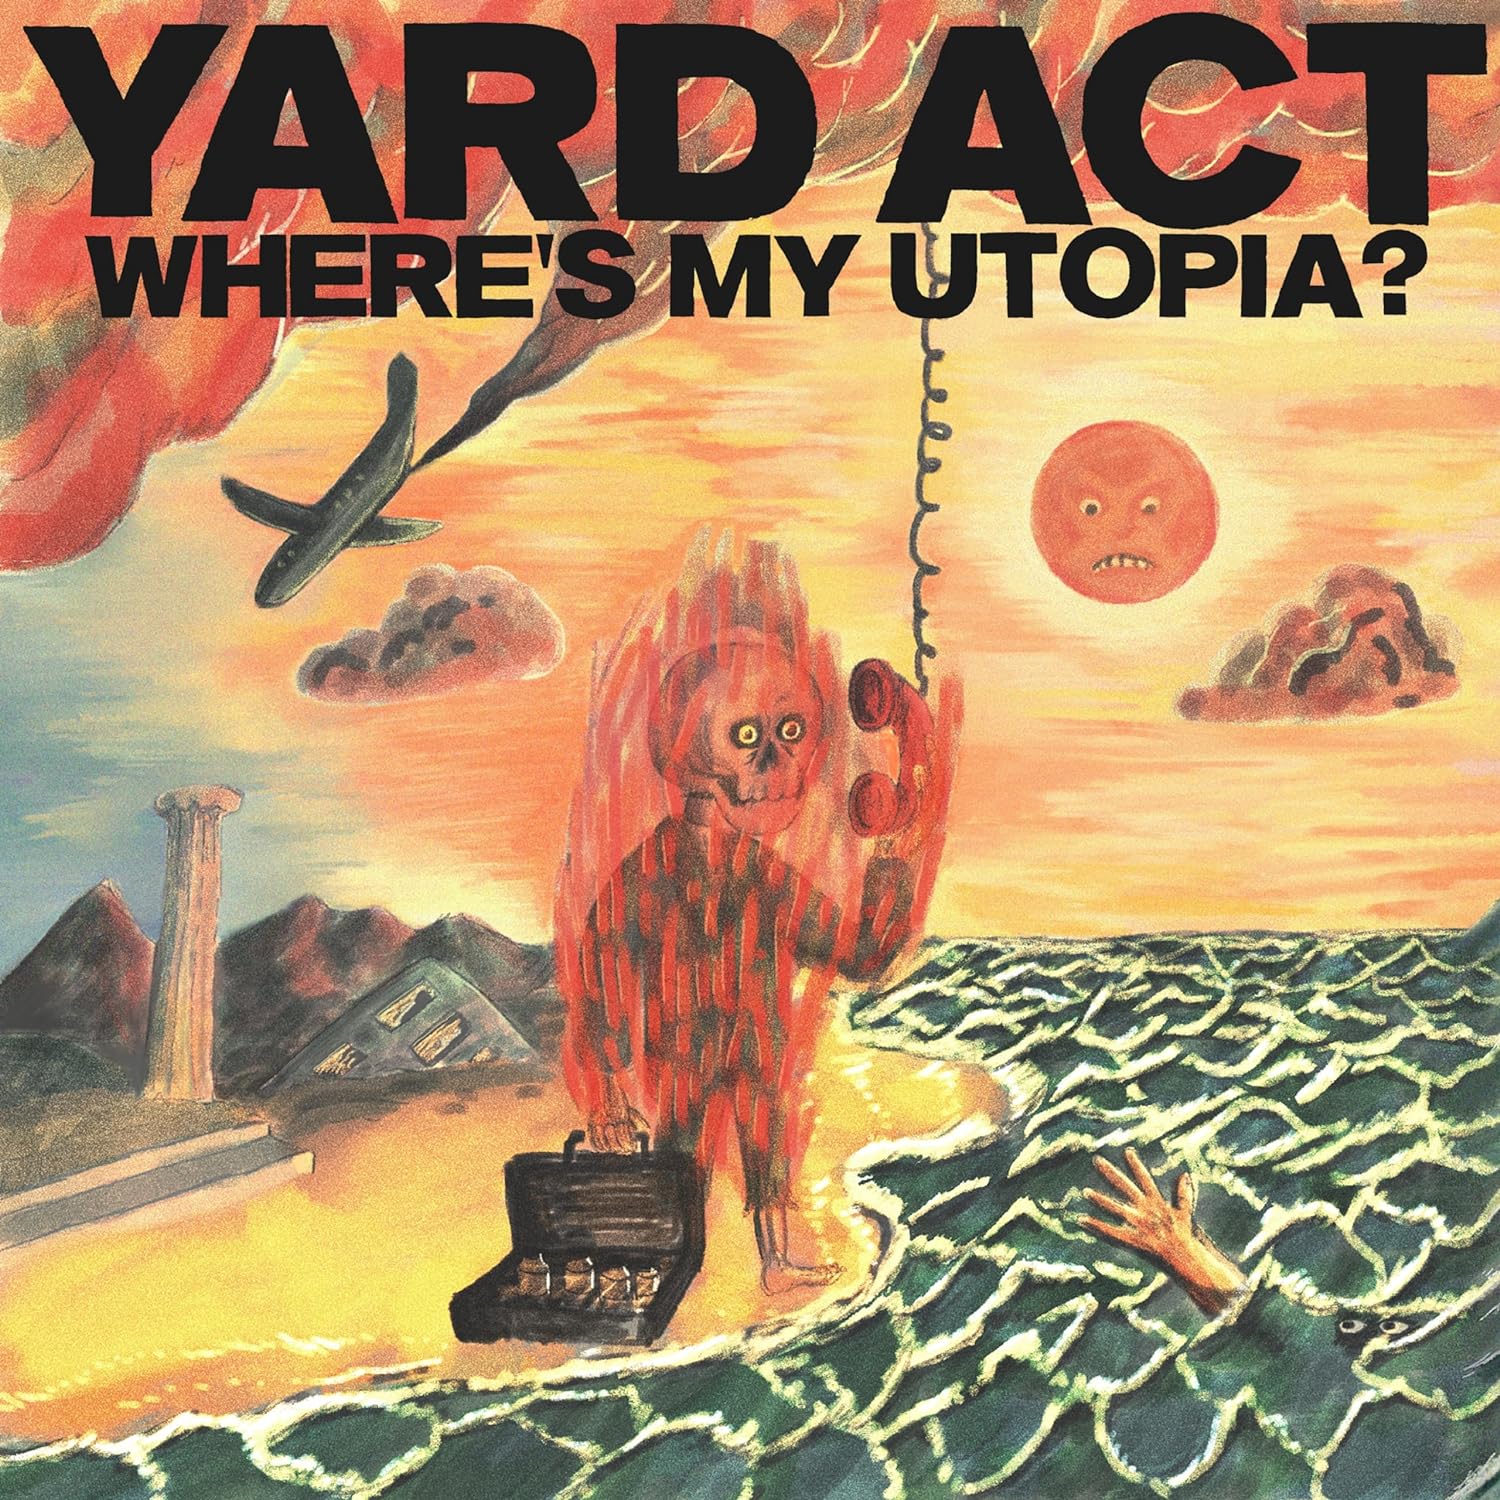 Yard Act Where's My Utopia - Ireland Vinyl